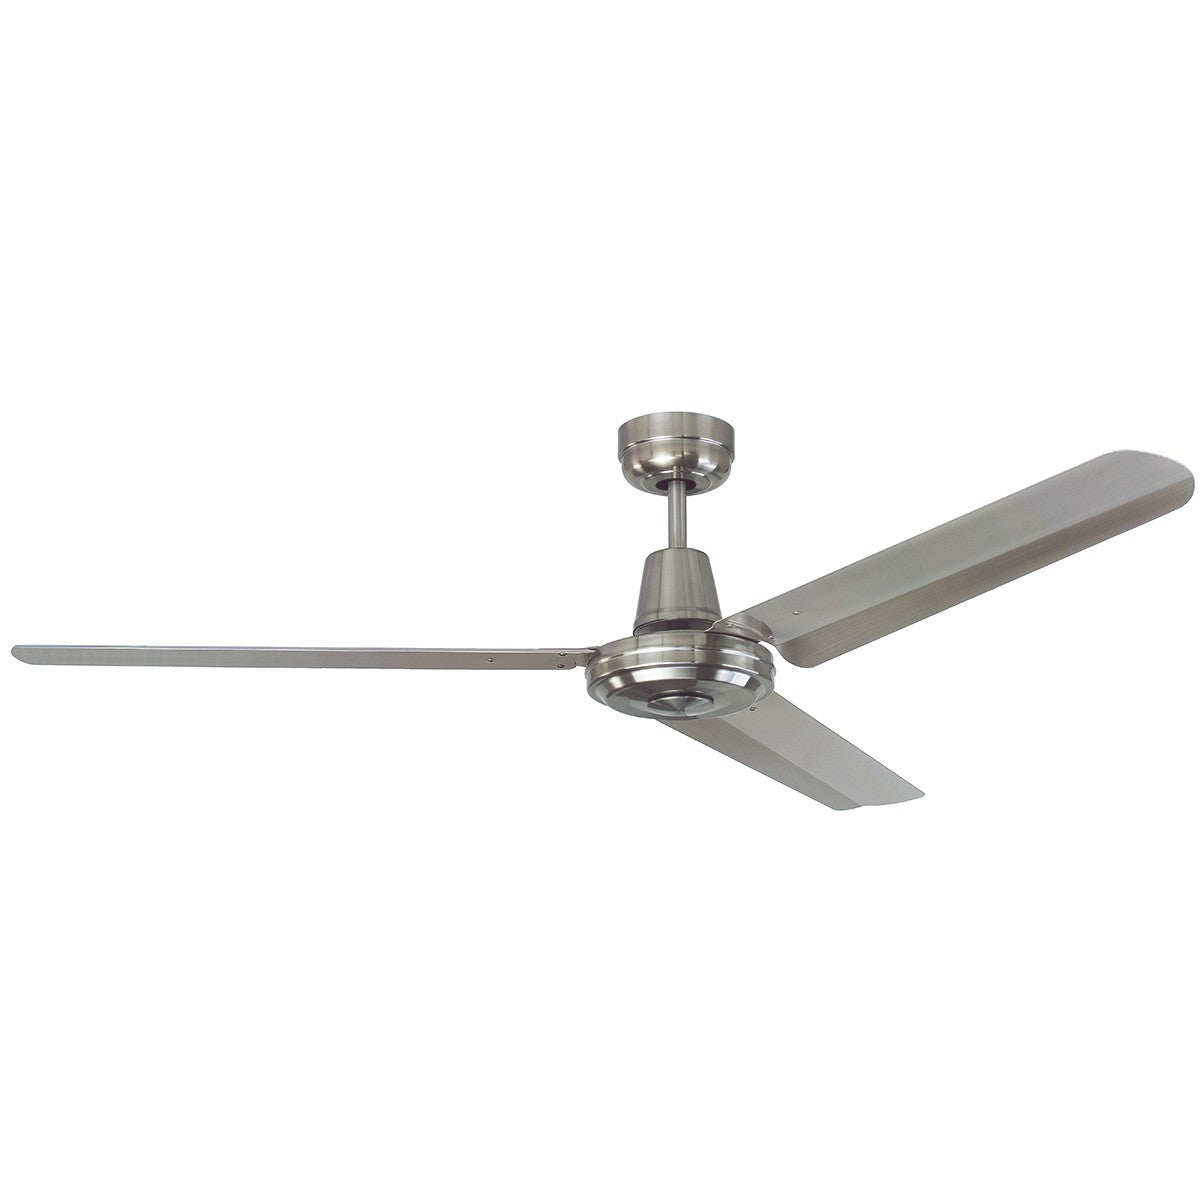 Swift Stainless Steel Ceiling Fan, 142cm/56"